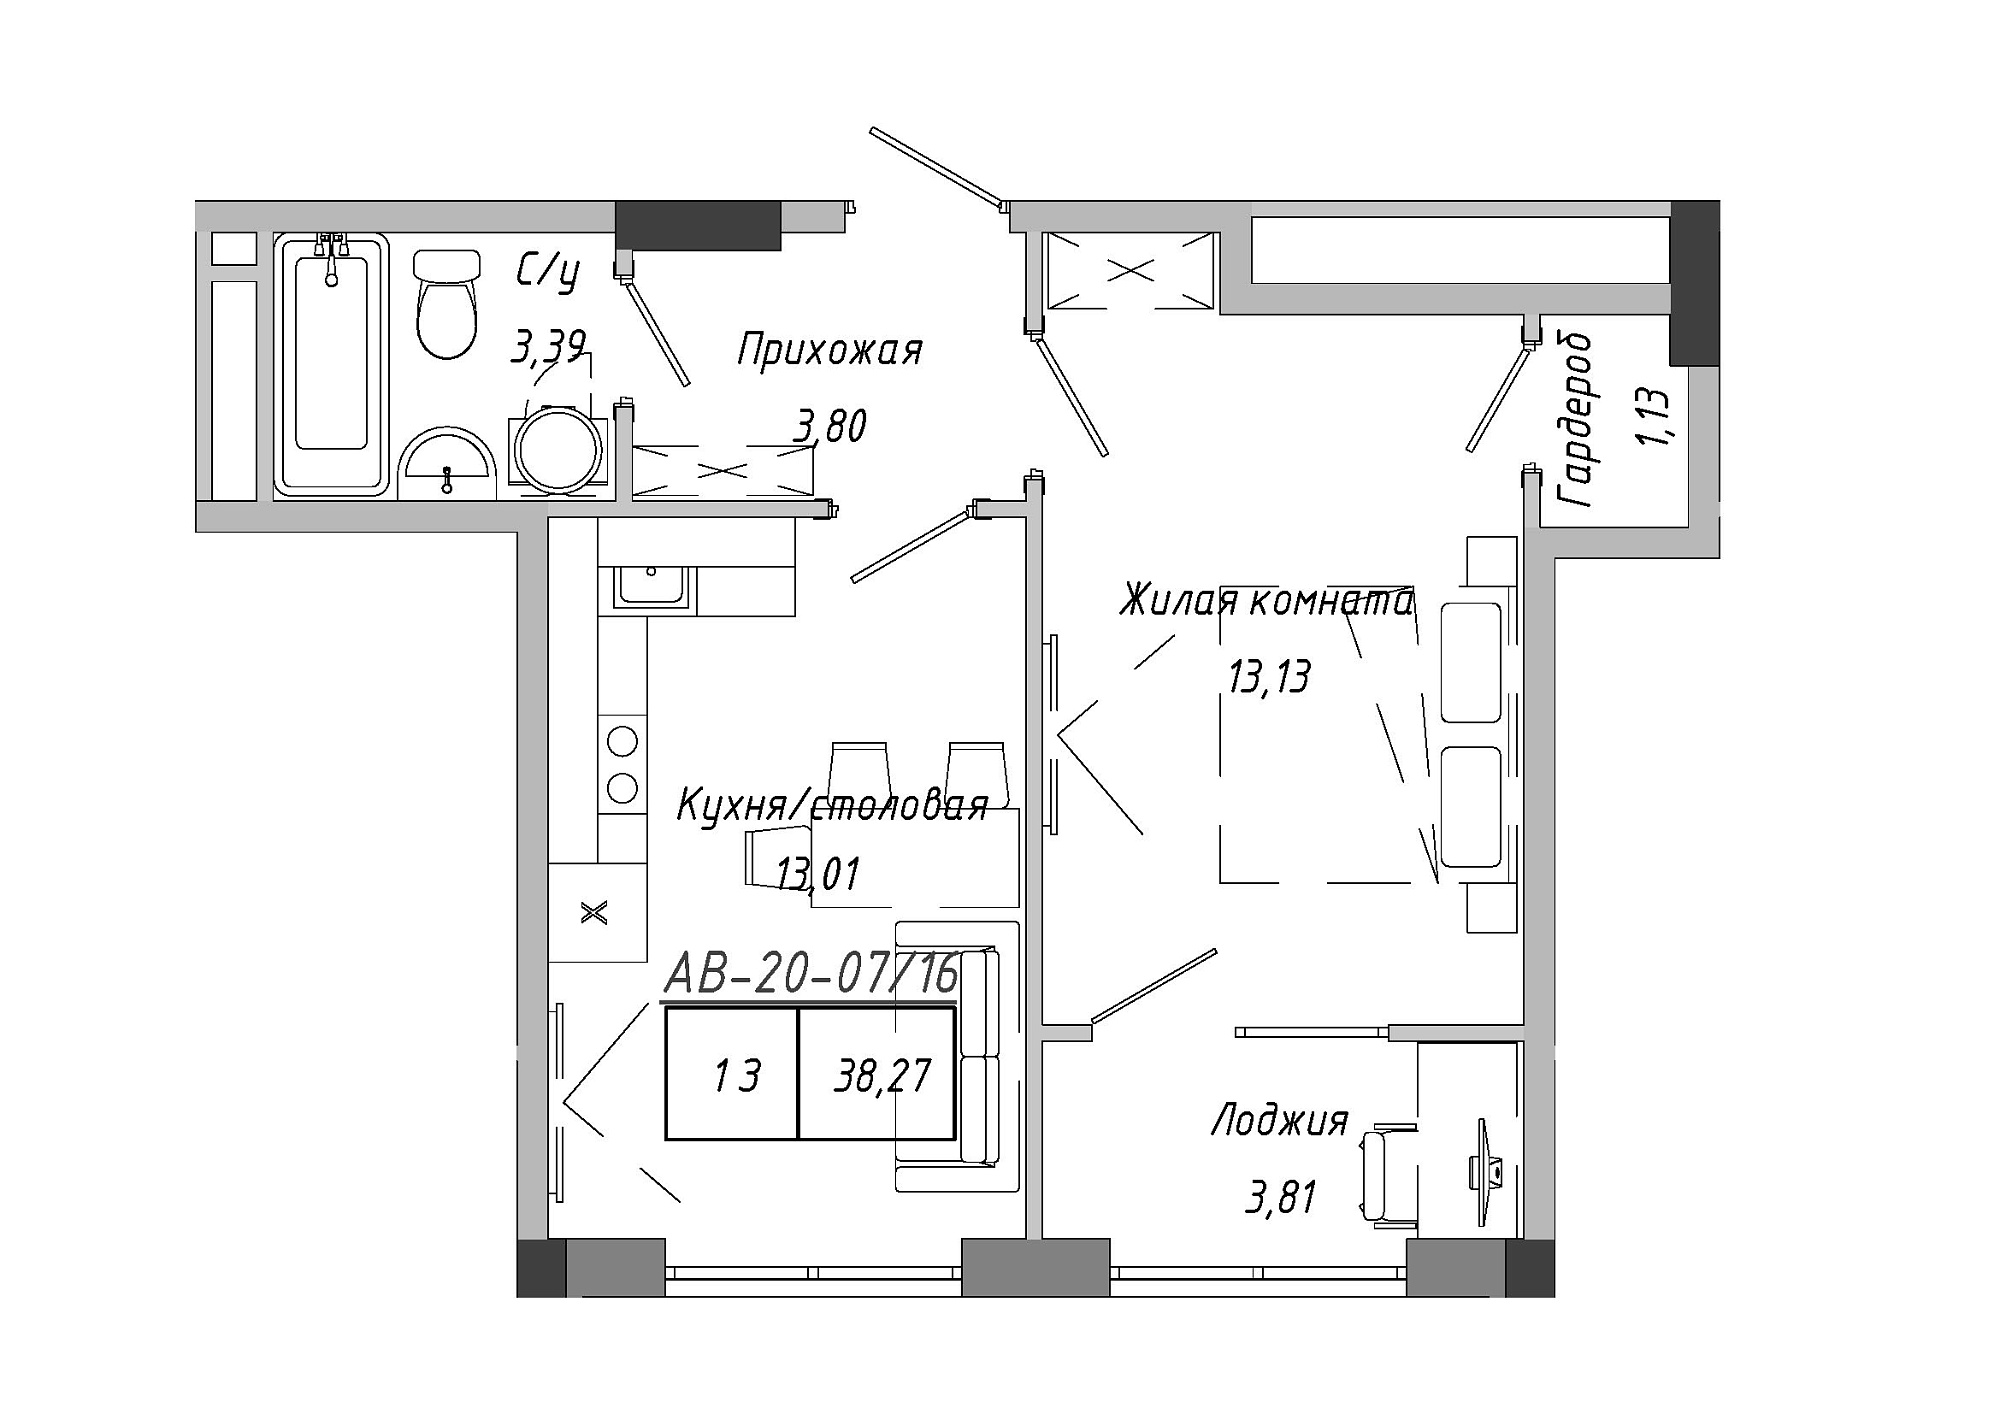 Планировка 1-к квартира площей 38.79м2, AB-20-07/00016.